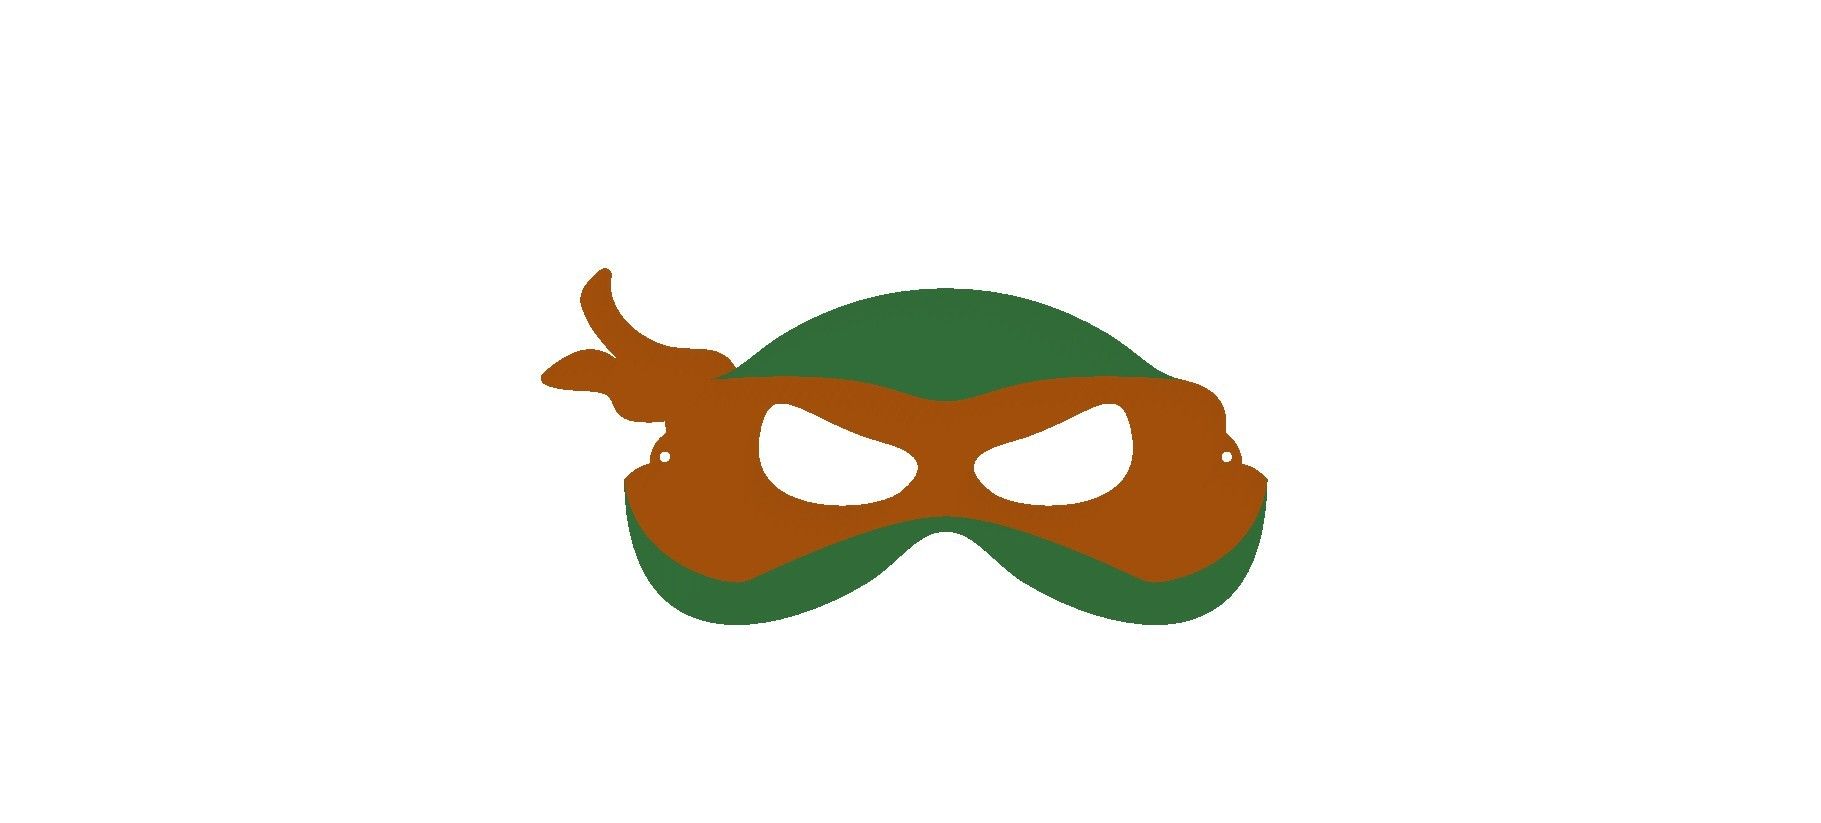 Download STL file Ninja Turtle masks / Masques tortues ninja • 3D ...